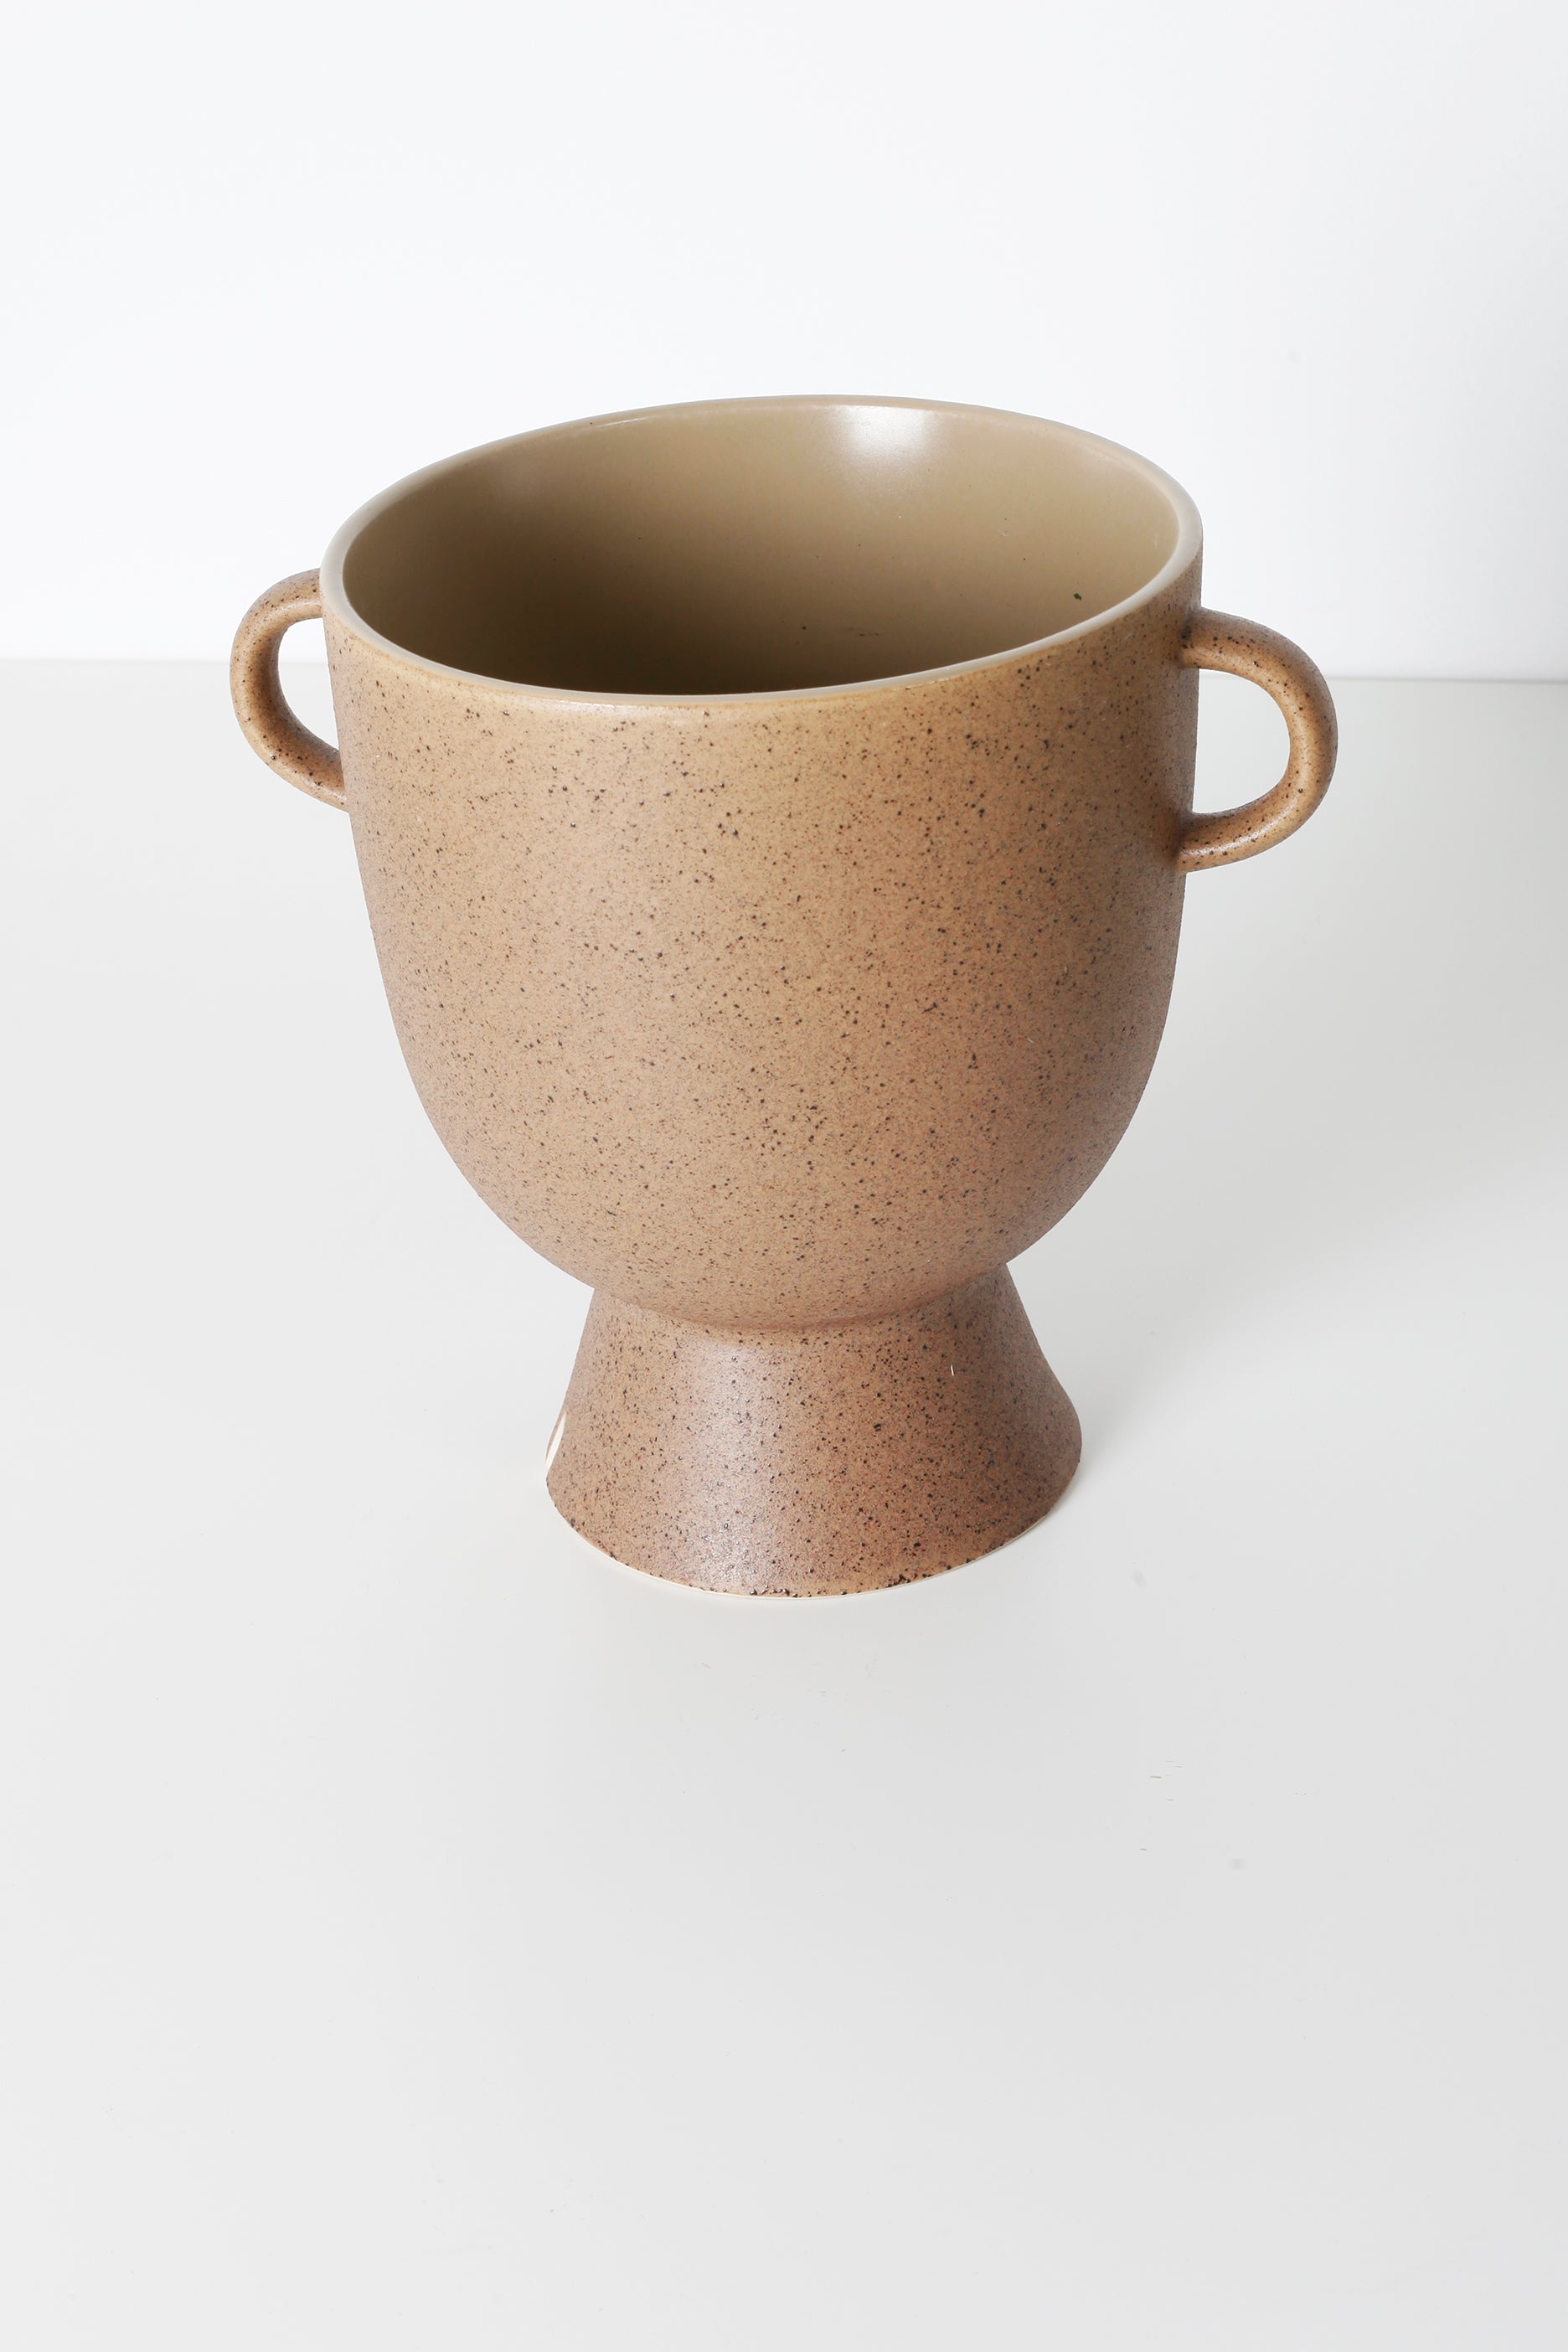 Beige Ceramic Vase